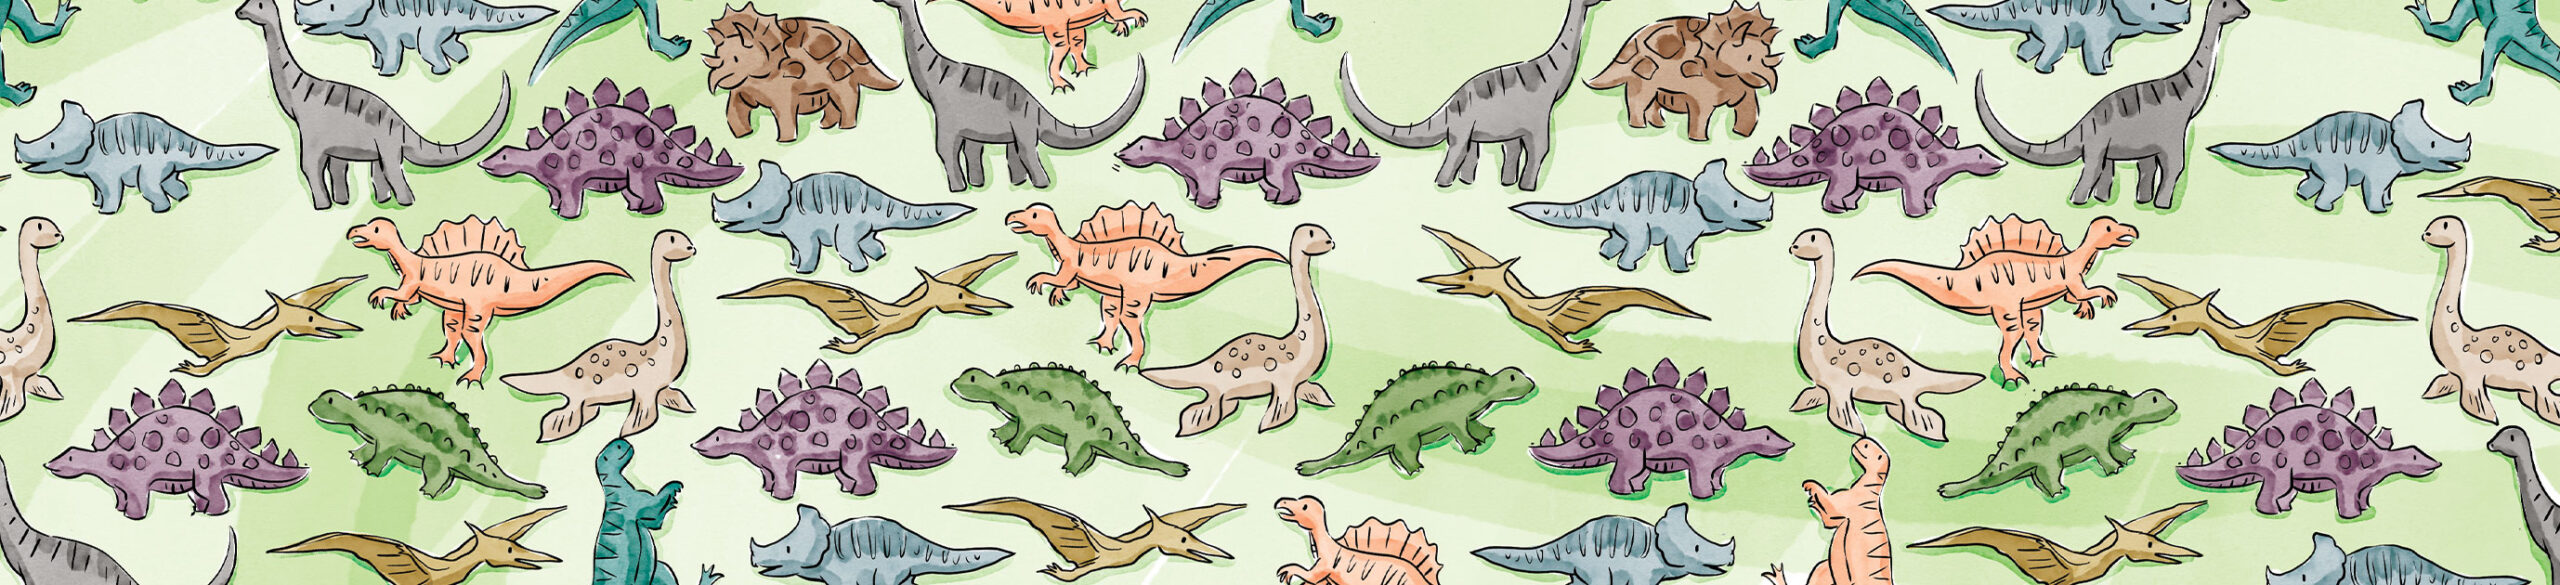 childrens dinosaur illustrations